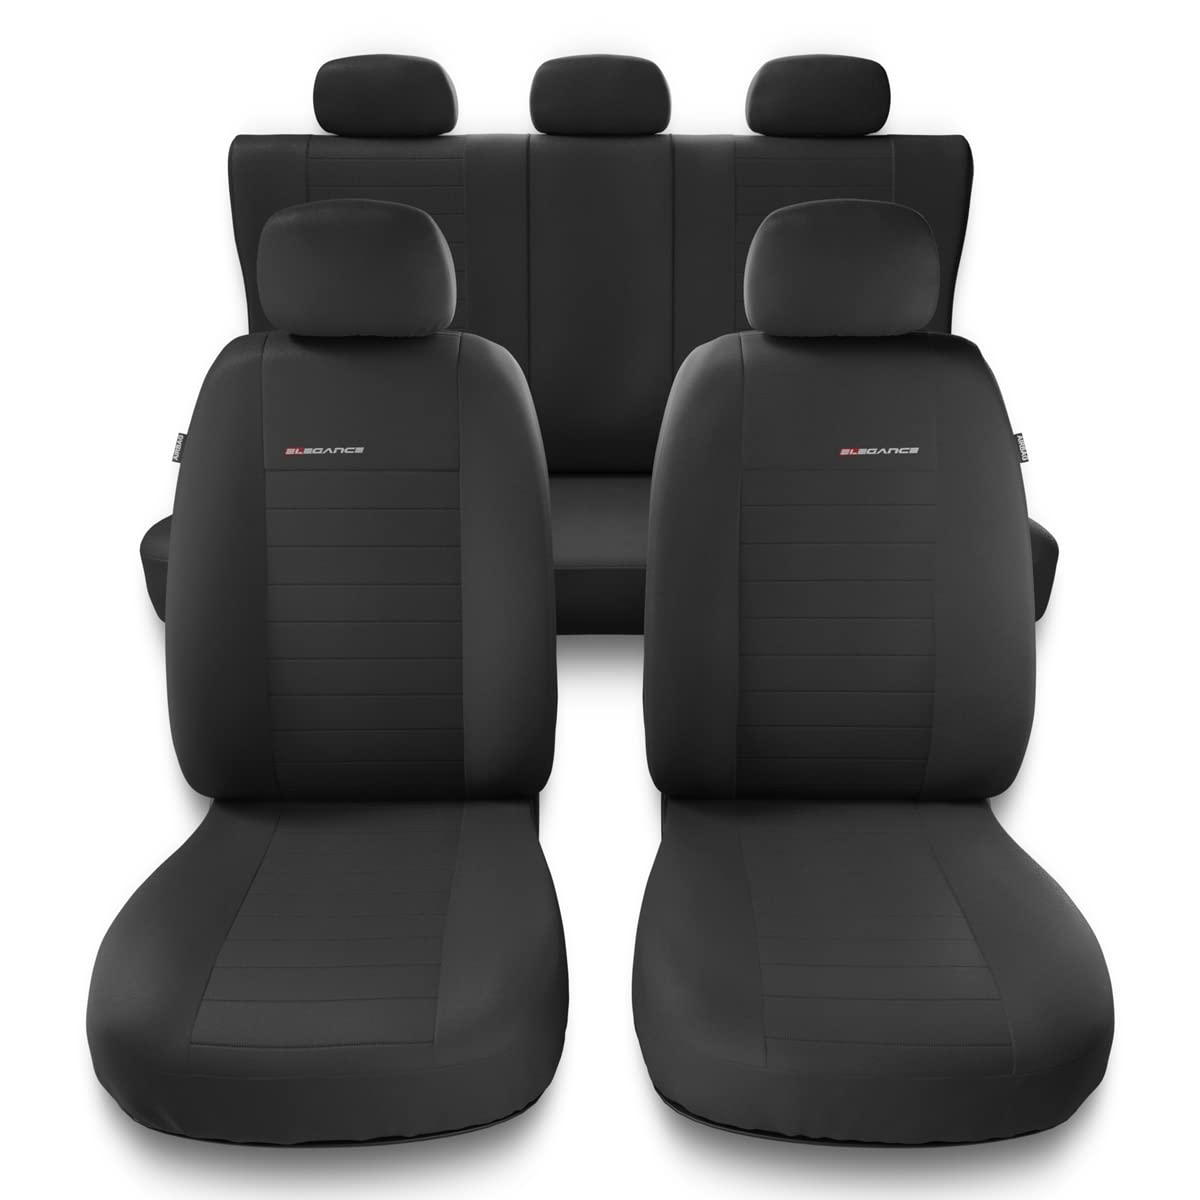 Mossa - Universal Sitzbezüge Auto kompatibel mit FIAT Bravo I, II (1995-2015) - Autositzbezüge Schonbezüge für Autositze - UNE-4 von Mossa